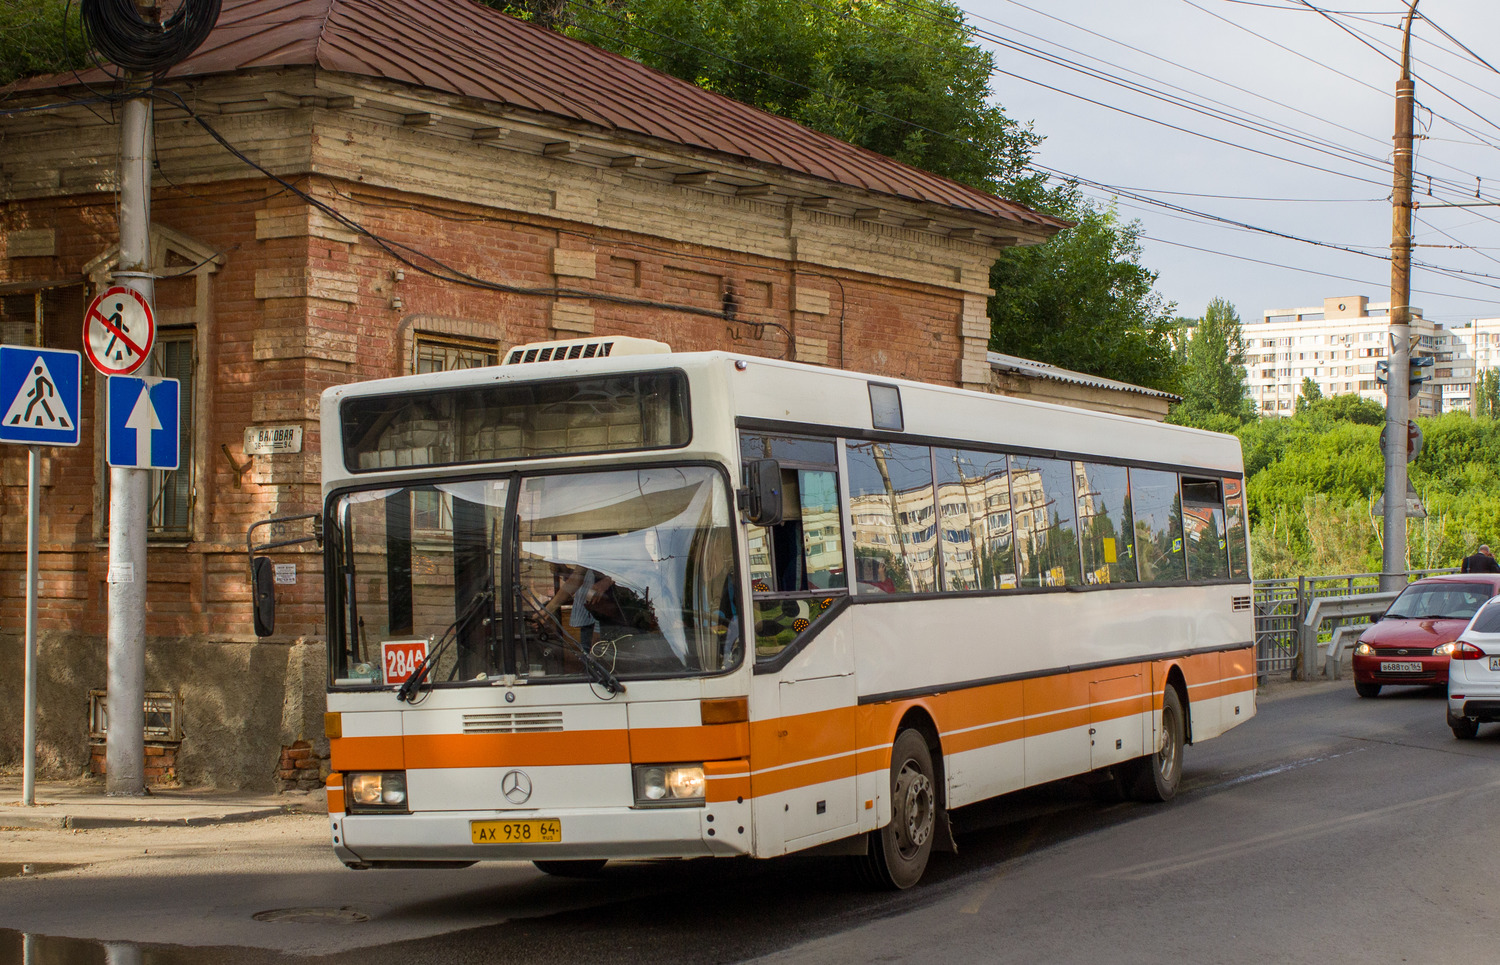 Saratov region, Mercedes-Benz O405 Nr. АХ 938 64